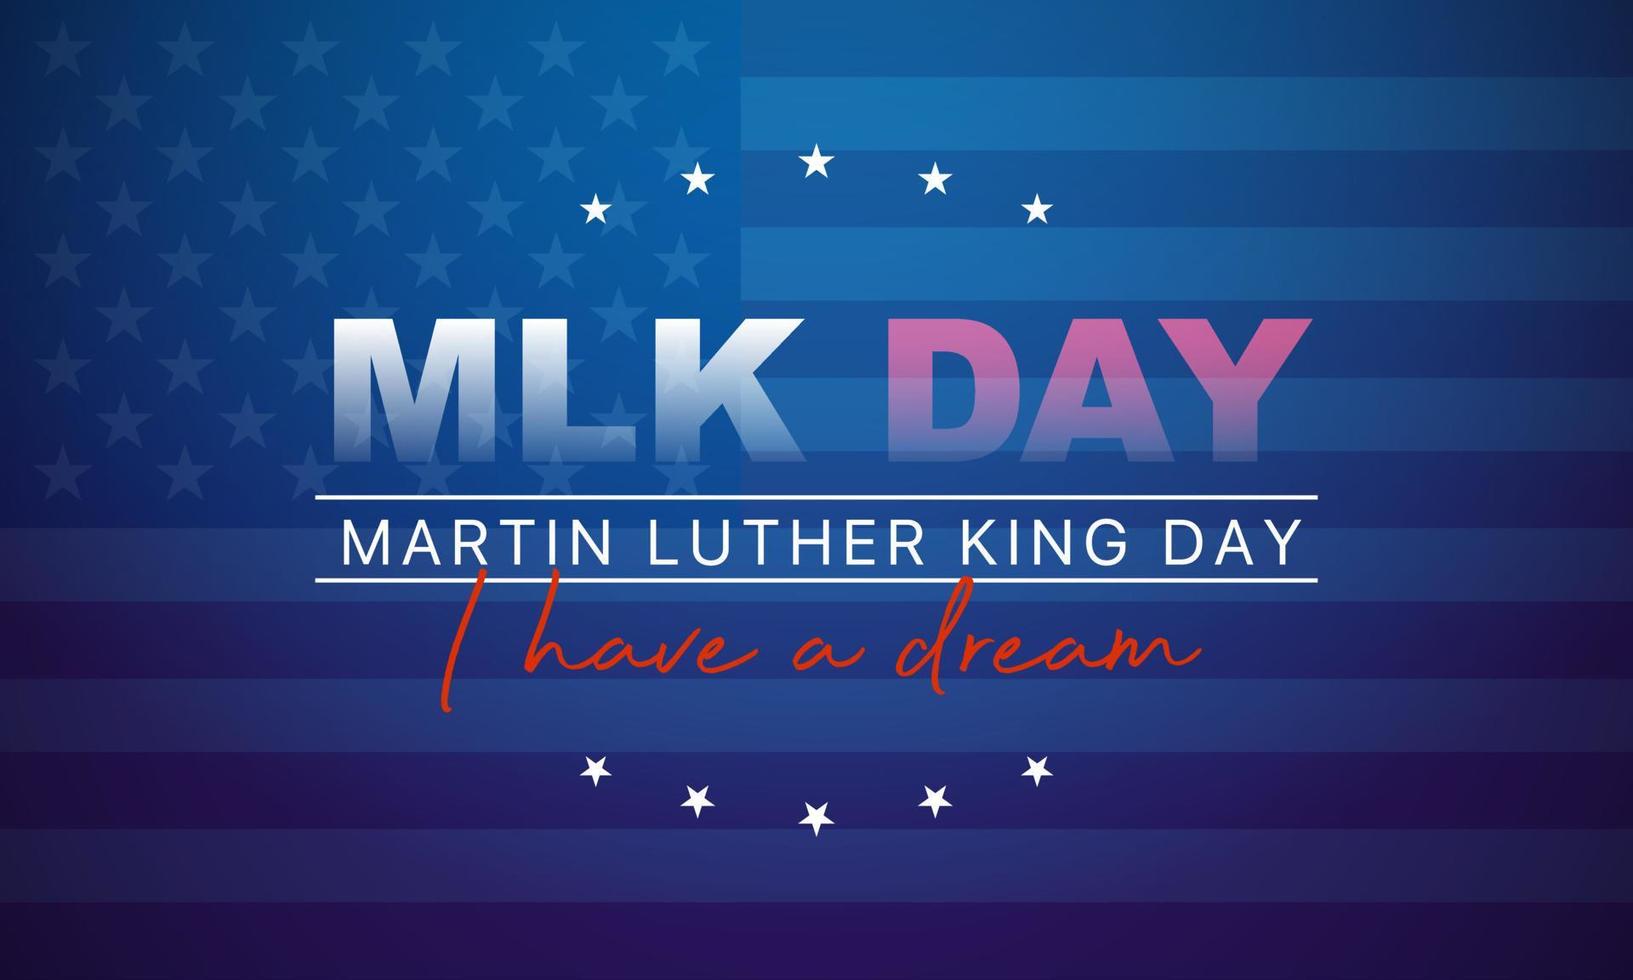 tarjeta de felicitación del día de martin luther king jr - tengo una cita inspiradora de ensueño - banner de fondo azul horizontal con la bandera de nosotros vector